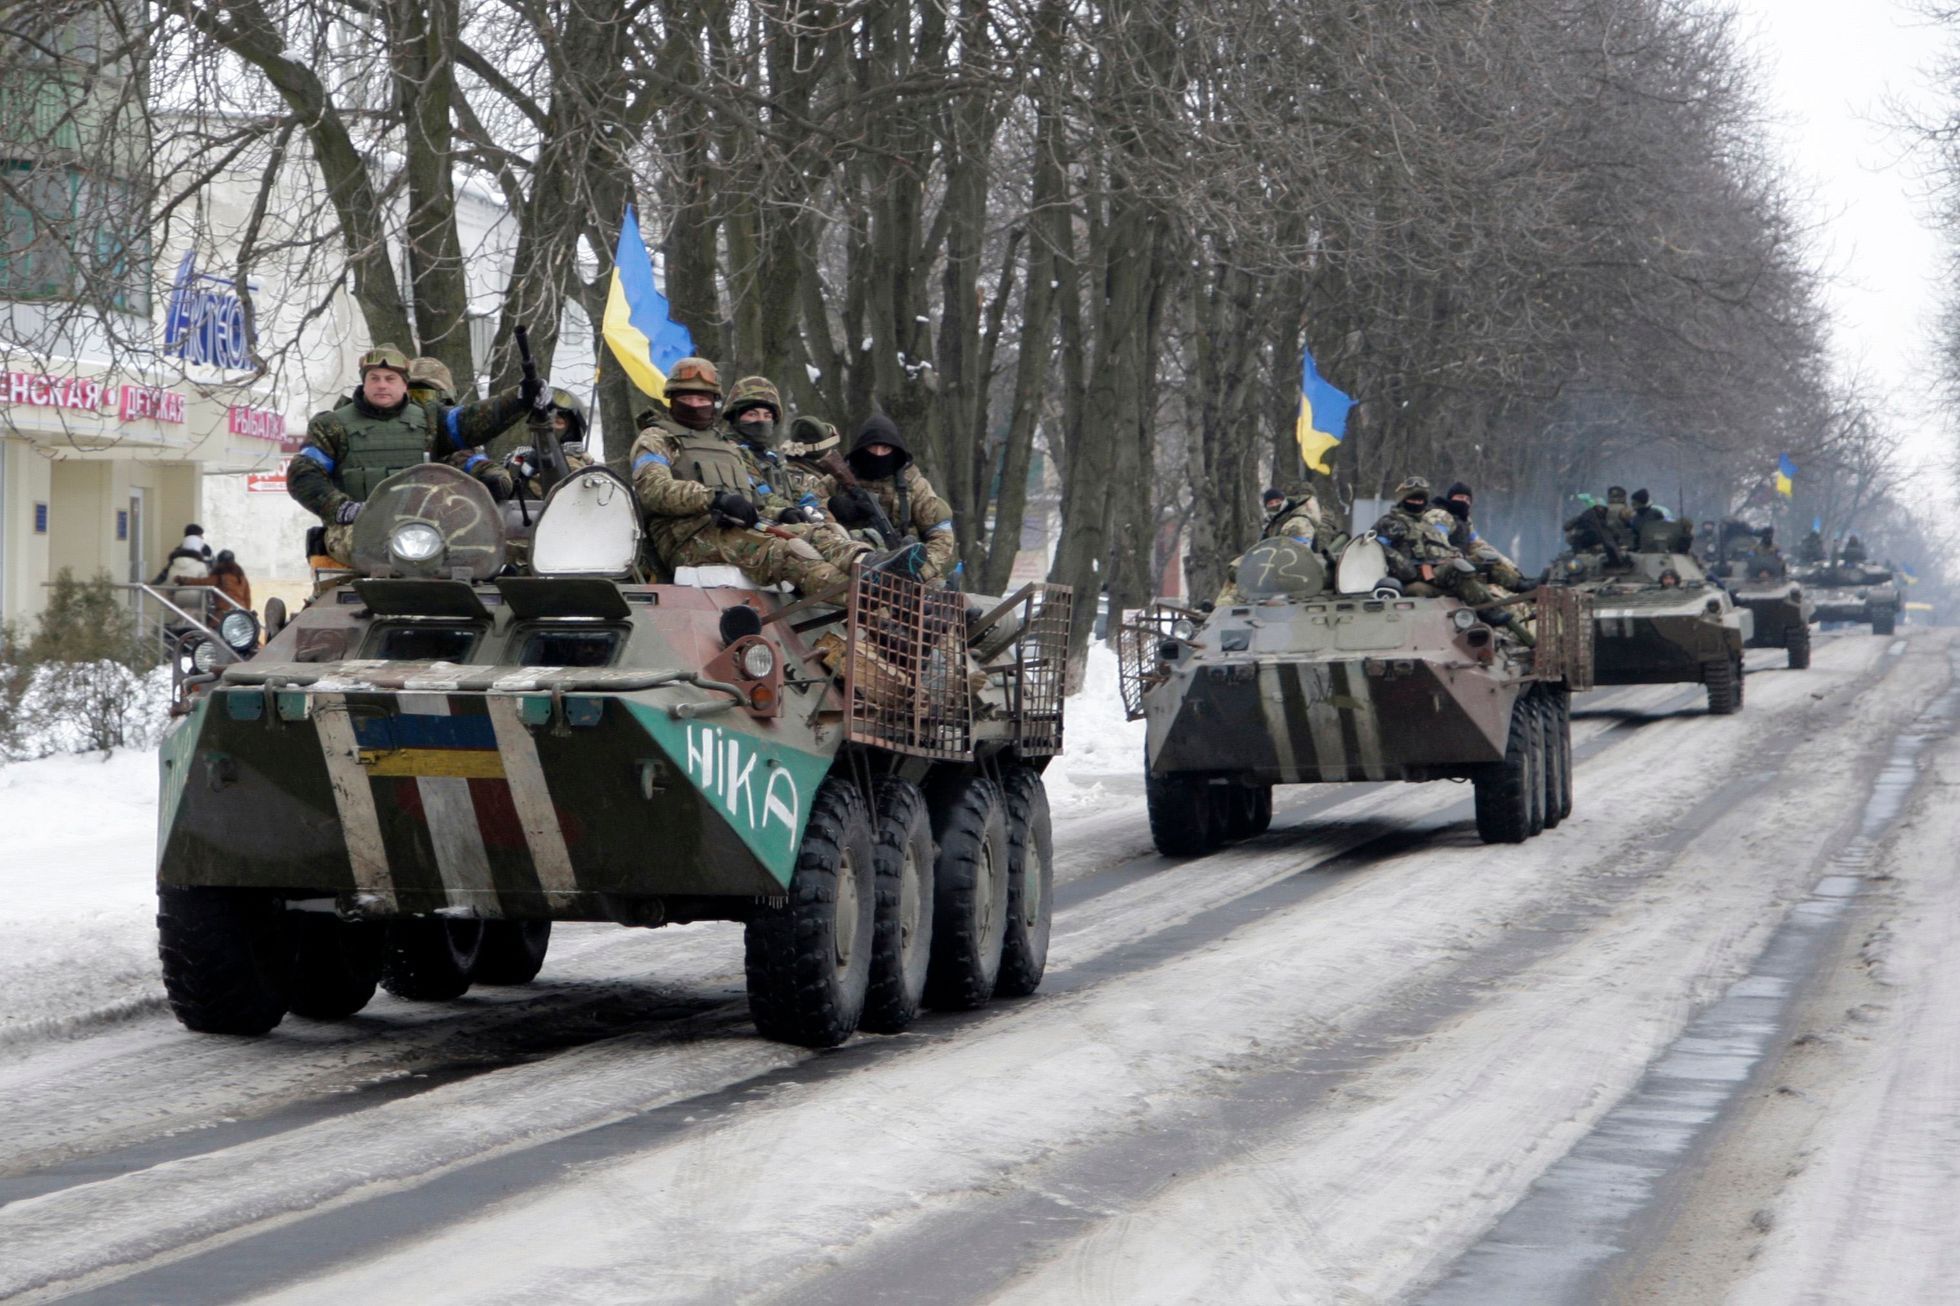 Ukrajina - Volnovacha - armáda